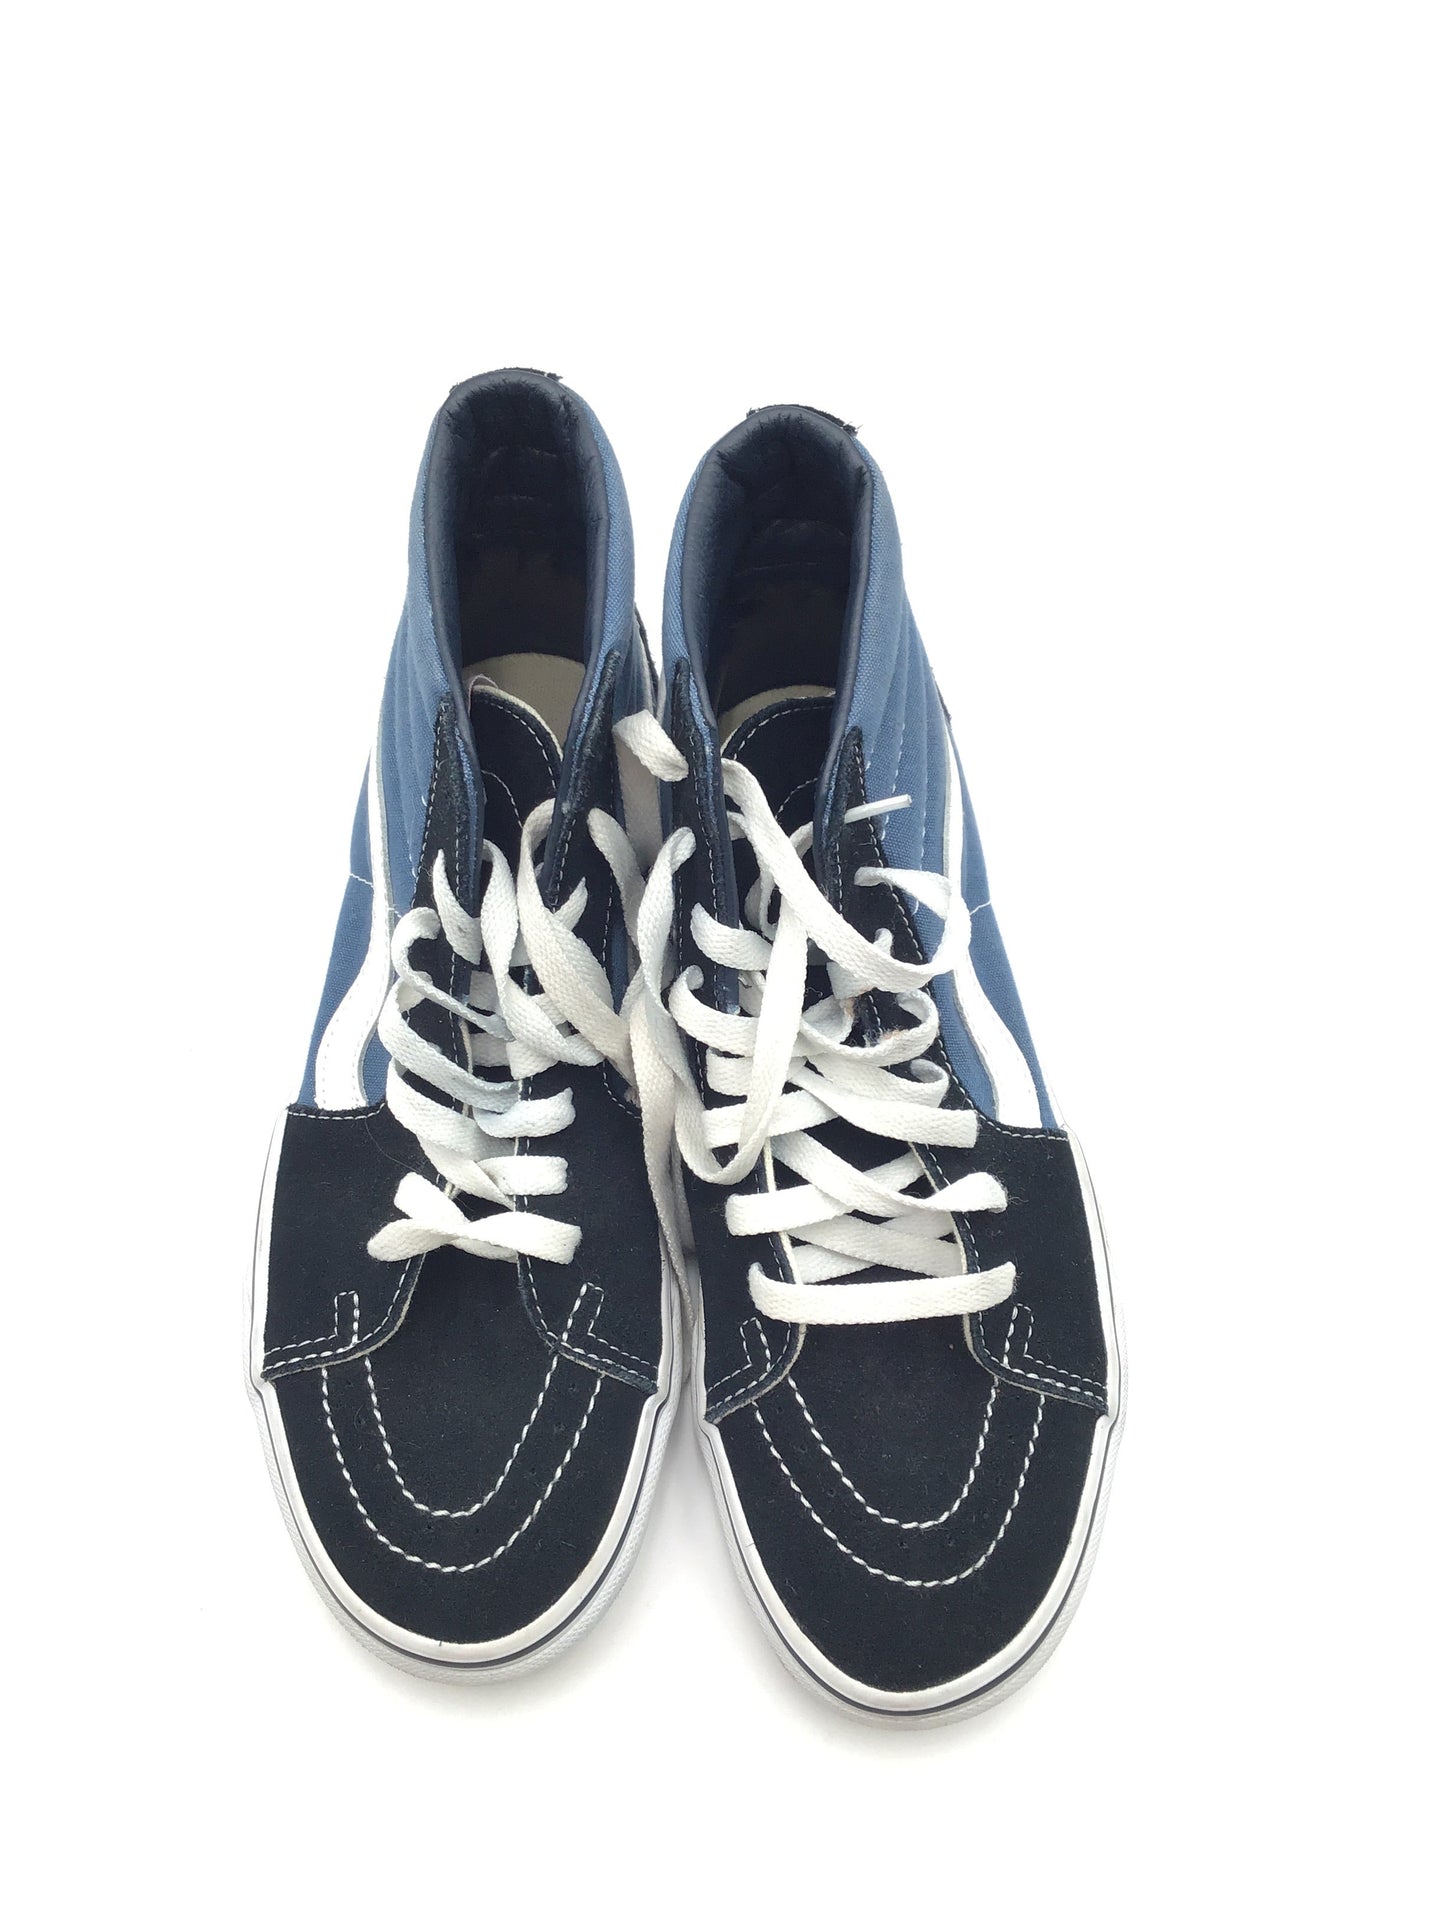 Blue Shoes Athletic Vans, Size 8